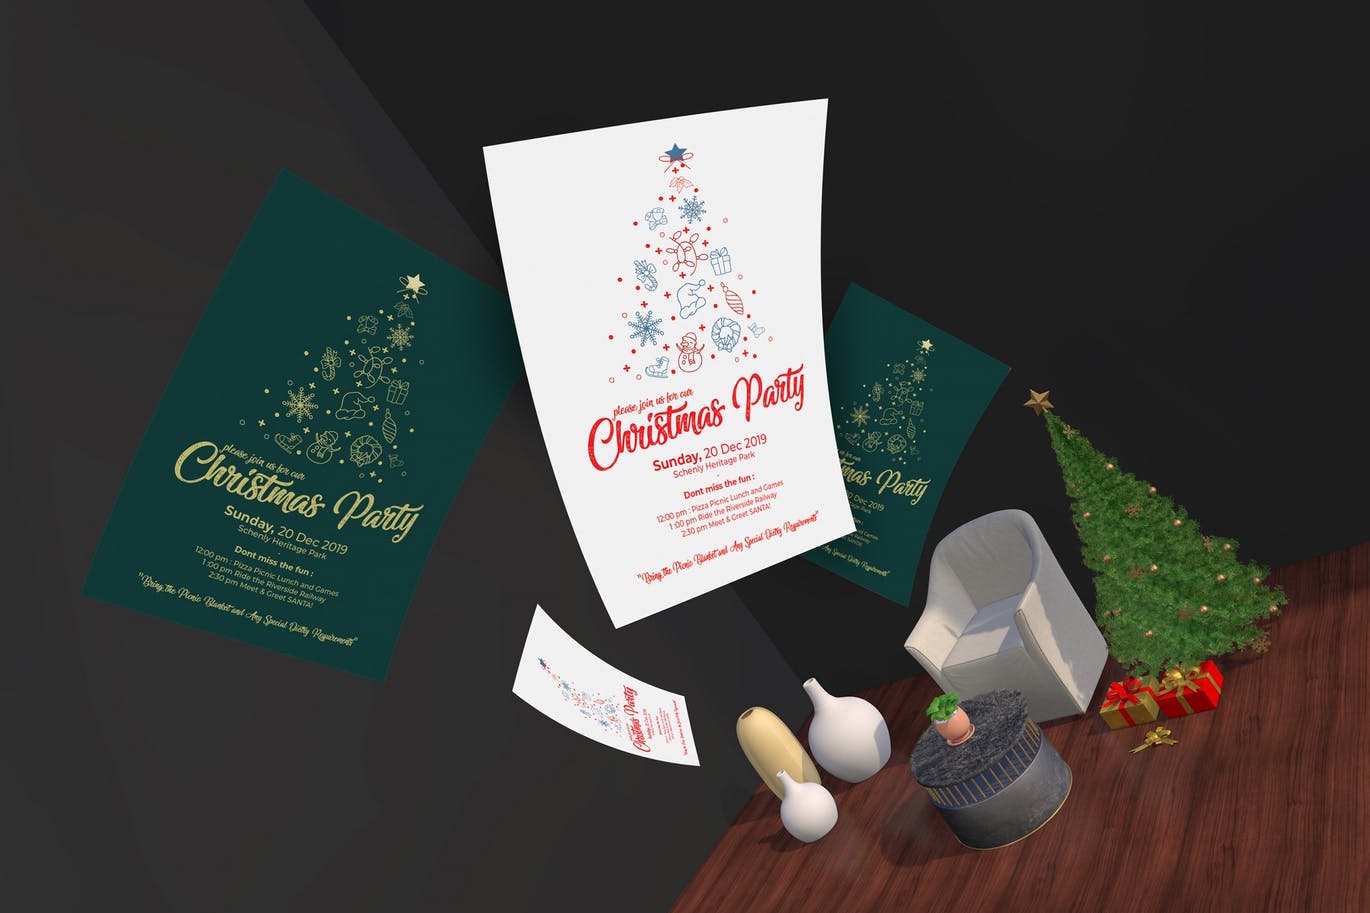 圣诞节主题派对邀请传单设计模板 Christmas Invitation Flyer插图